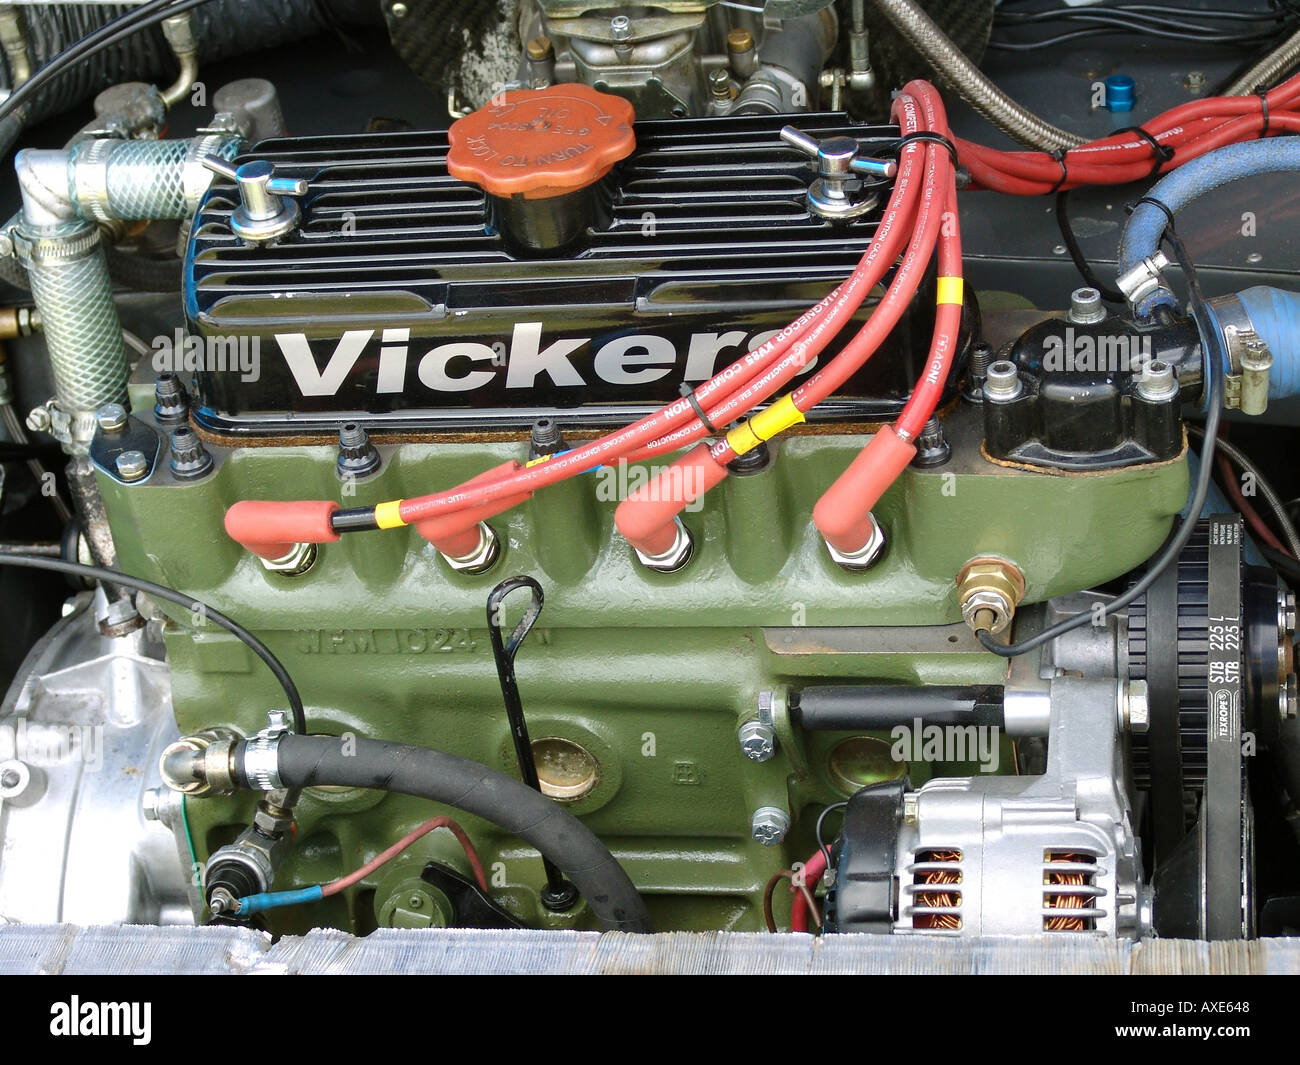 Motore Vickers Regno Unito 2004 Foto Stock